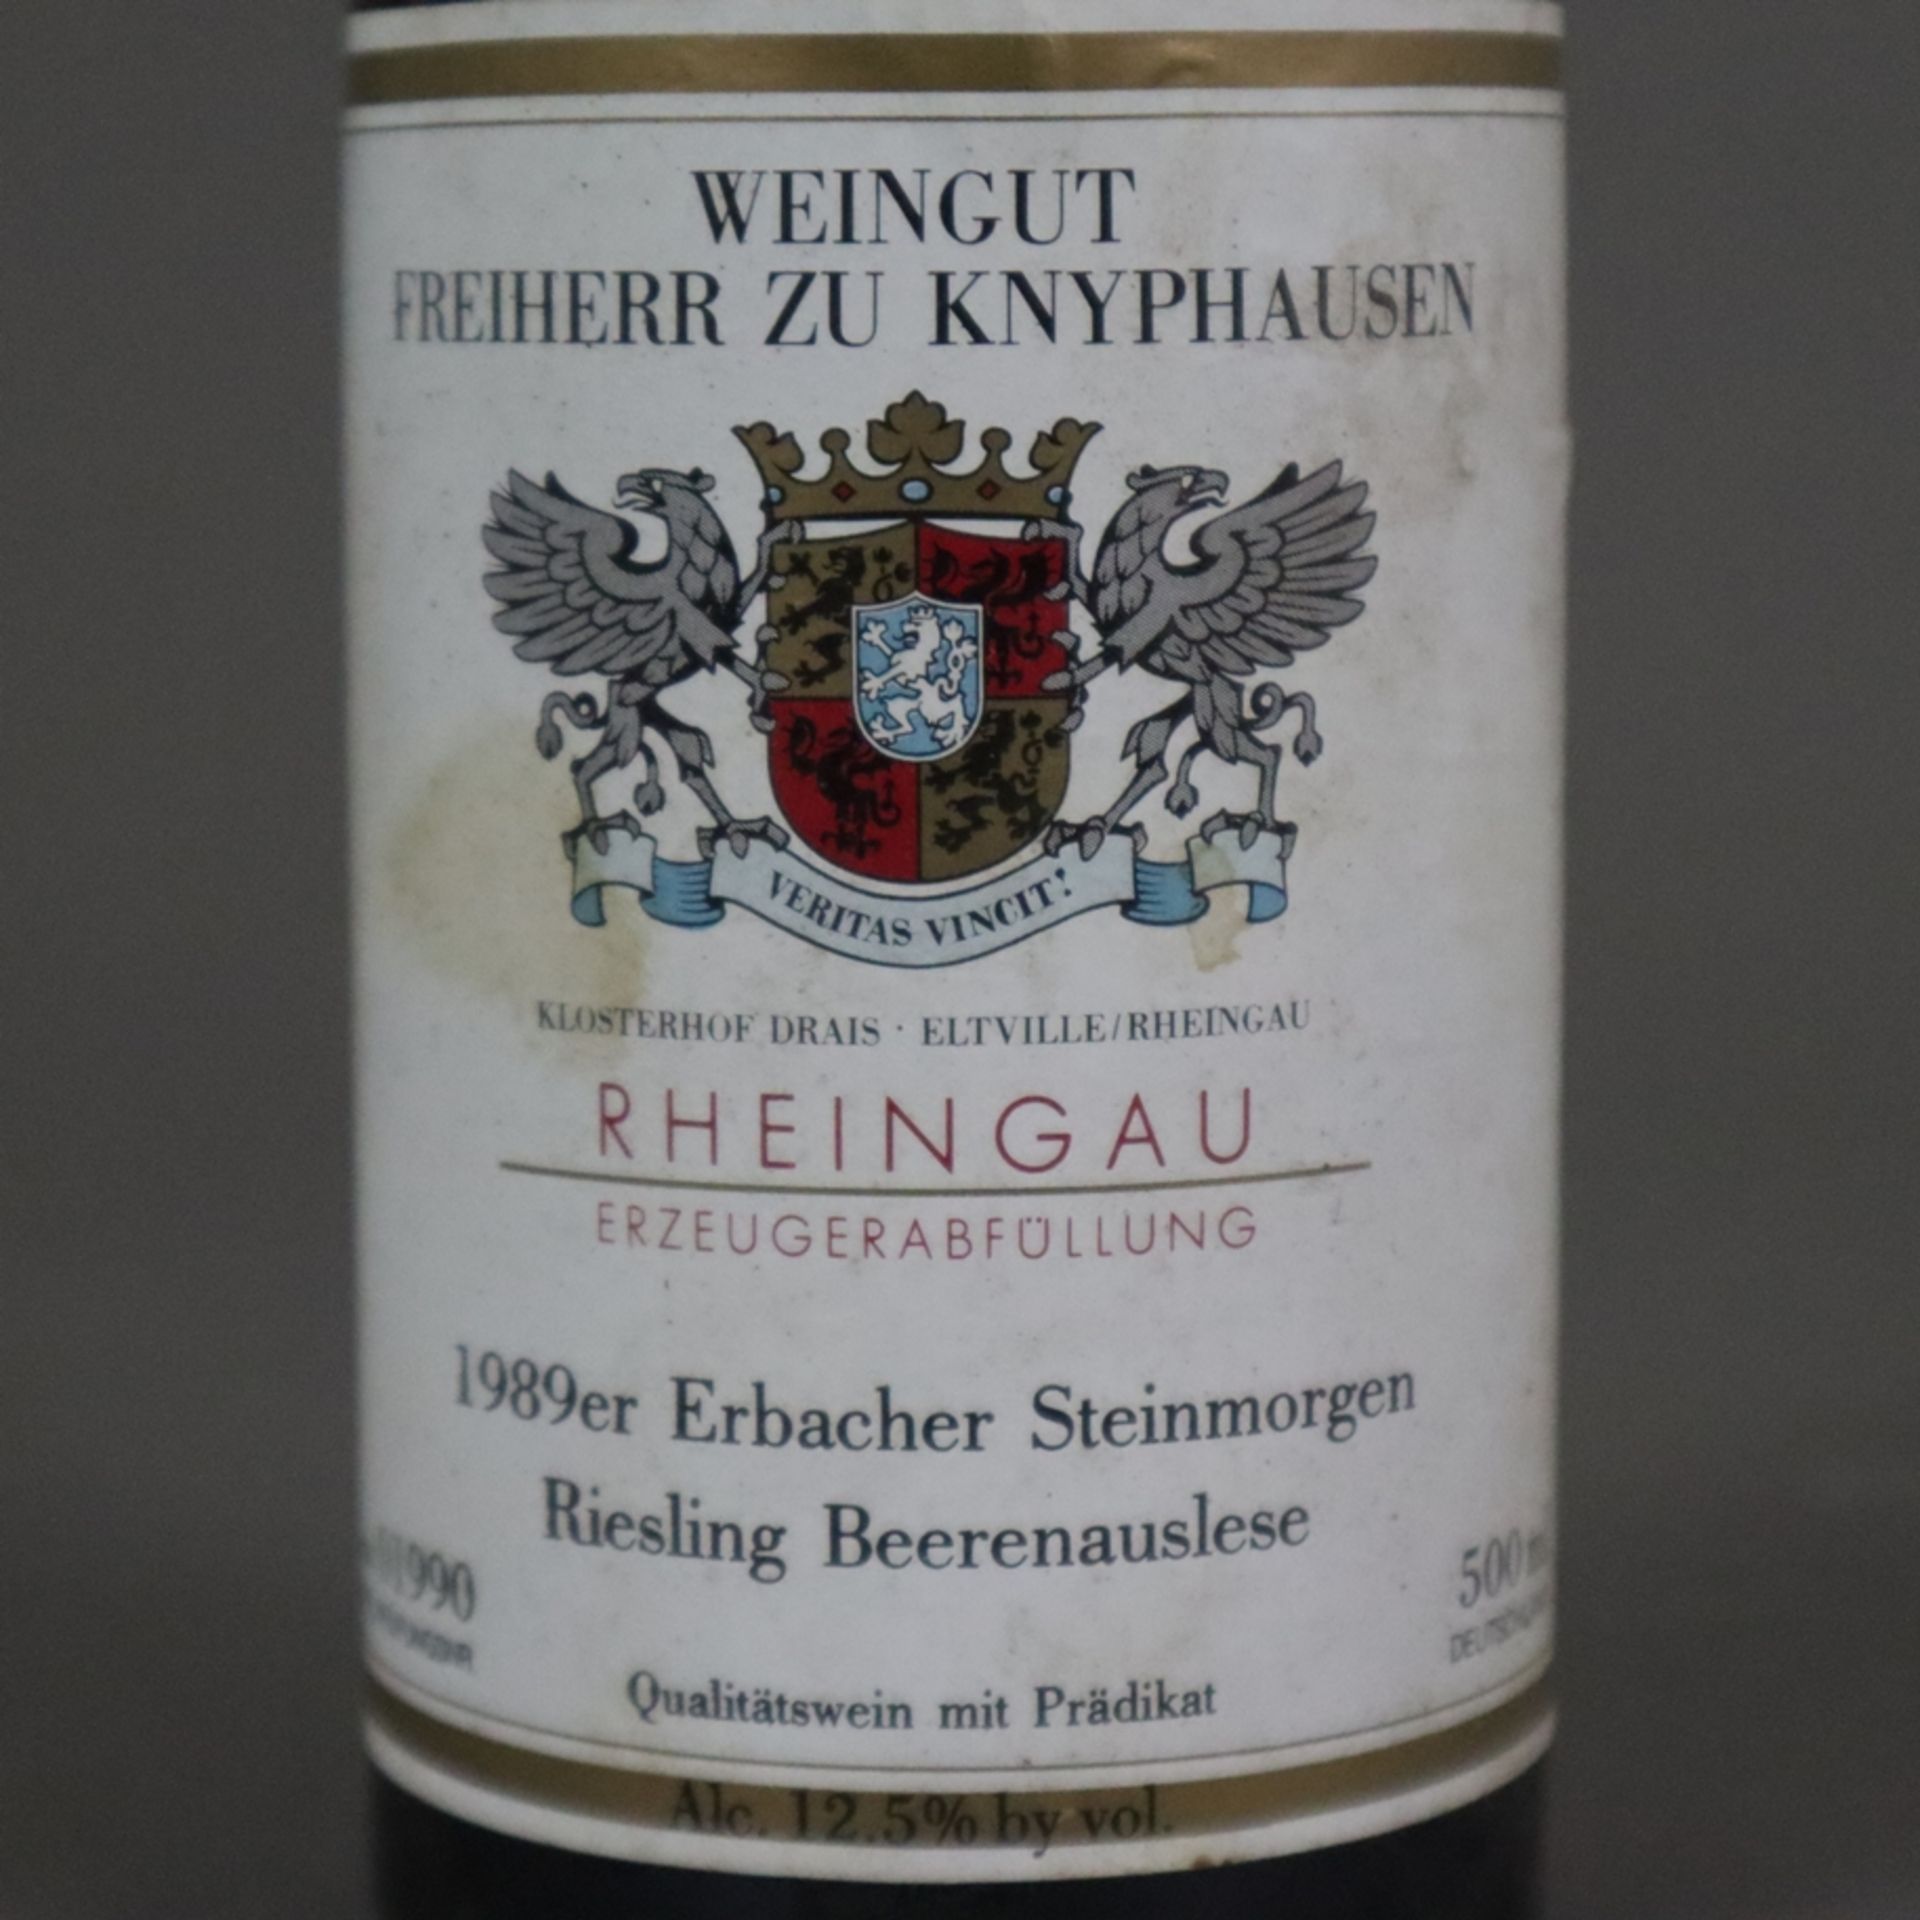 Wein - 3 Flaschen 1989 Erbach Steinmorgen Riesling Beerenauslese, Weingut Freiherr zu Knyphausen, 5 - Bild 4 aus 7